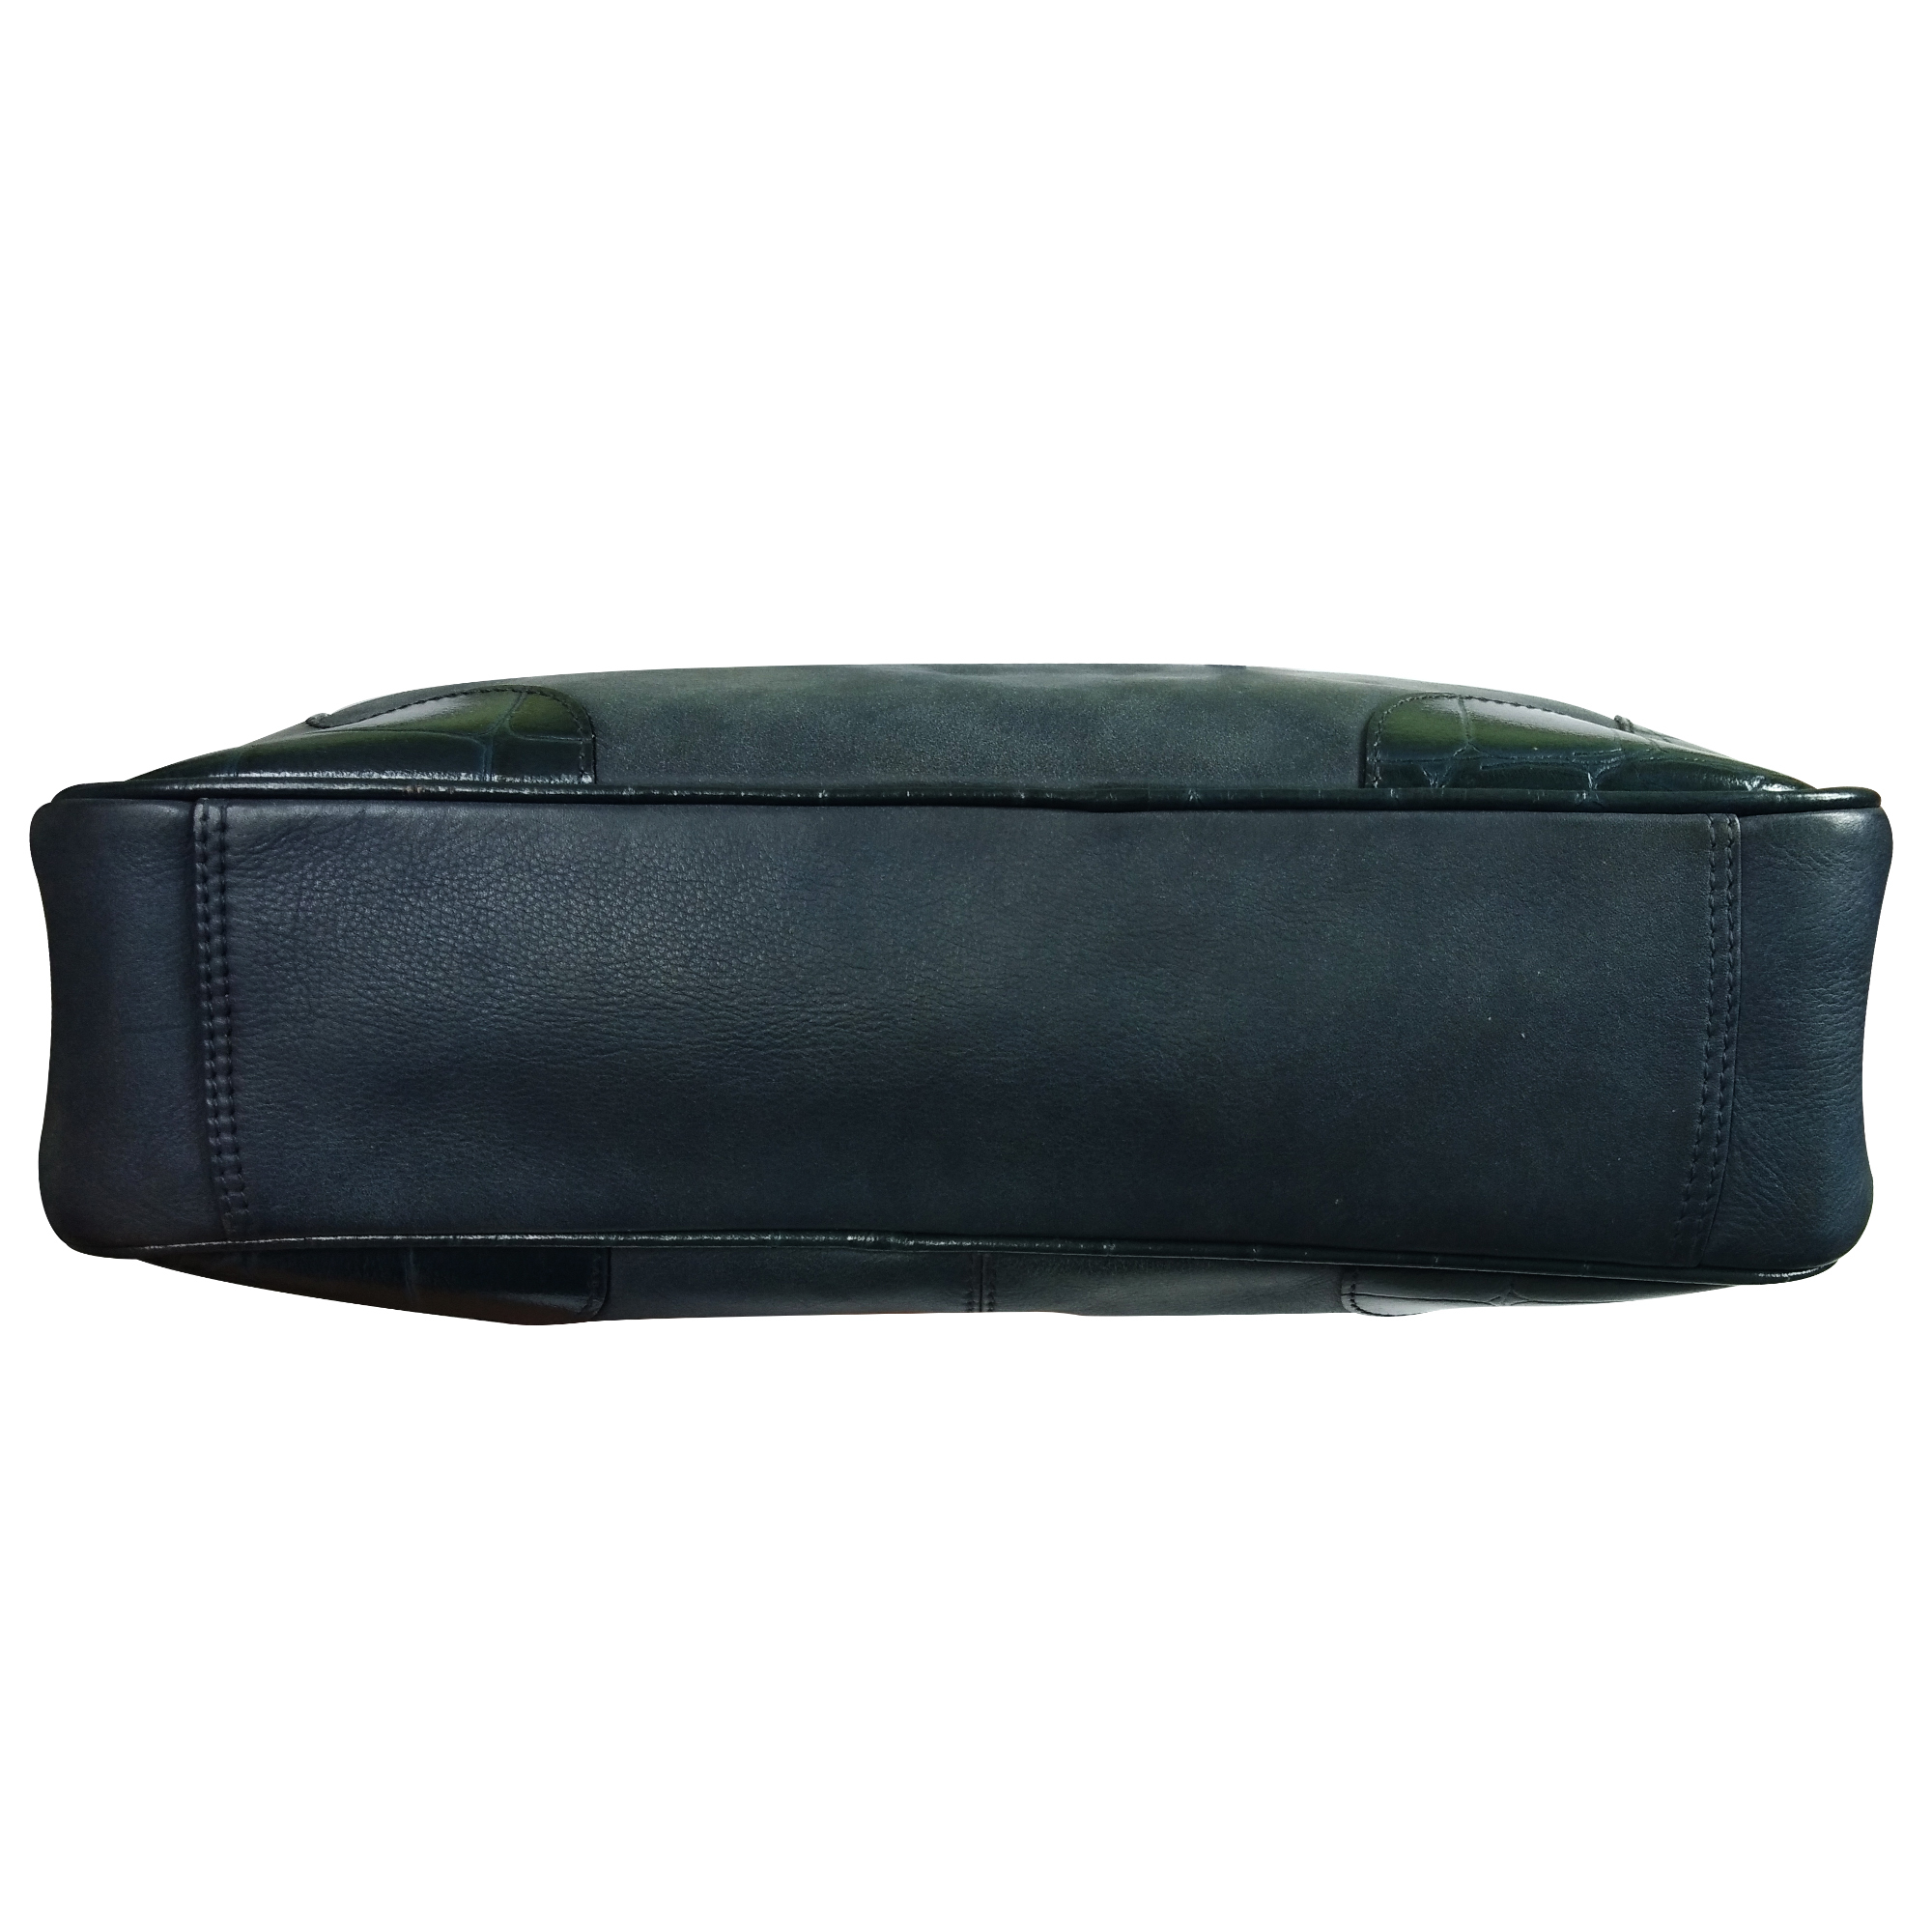 Leather I-Pad Office Bag Shoulder Handbag Women